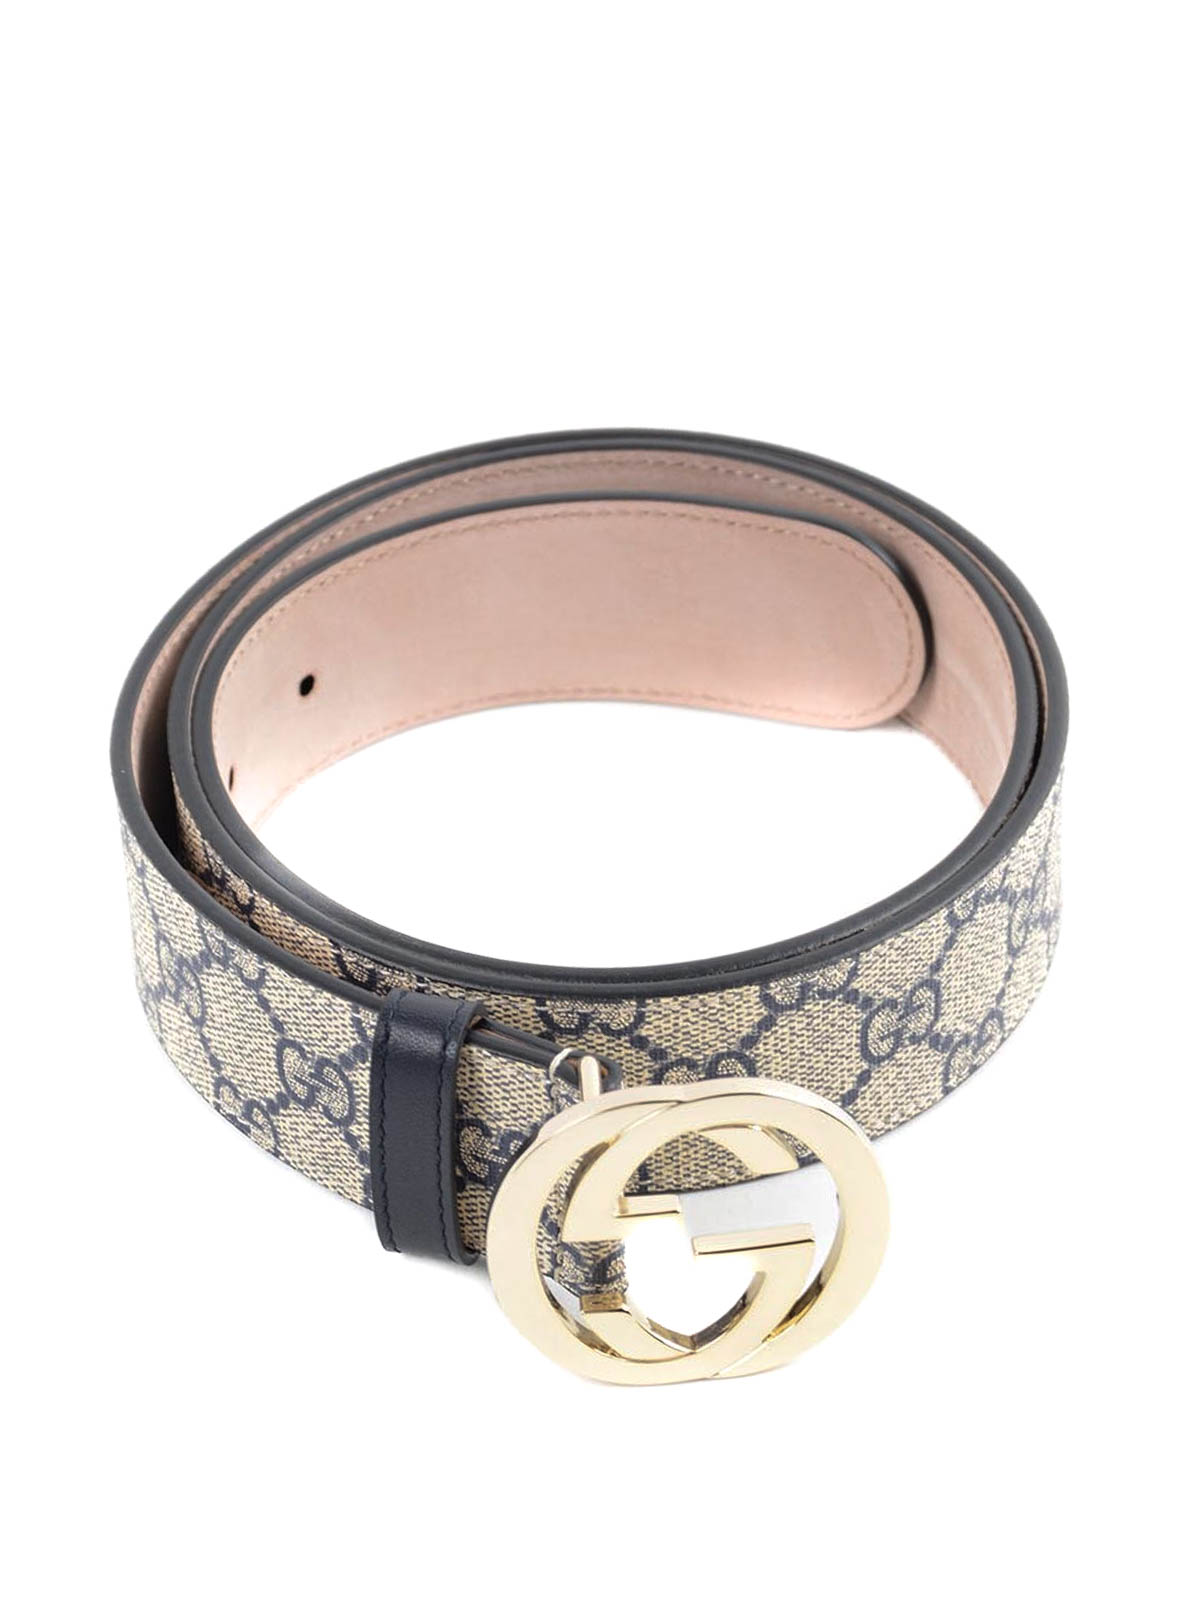 Gucci - GG Supreme belt - belts - 370543 KGDHG 4075